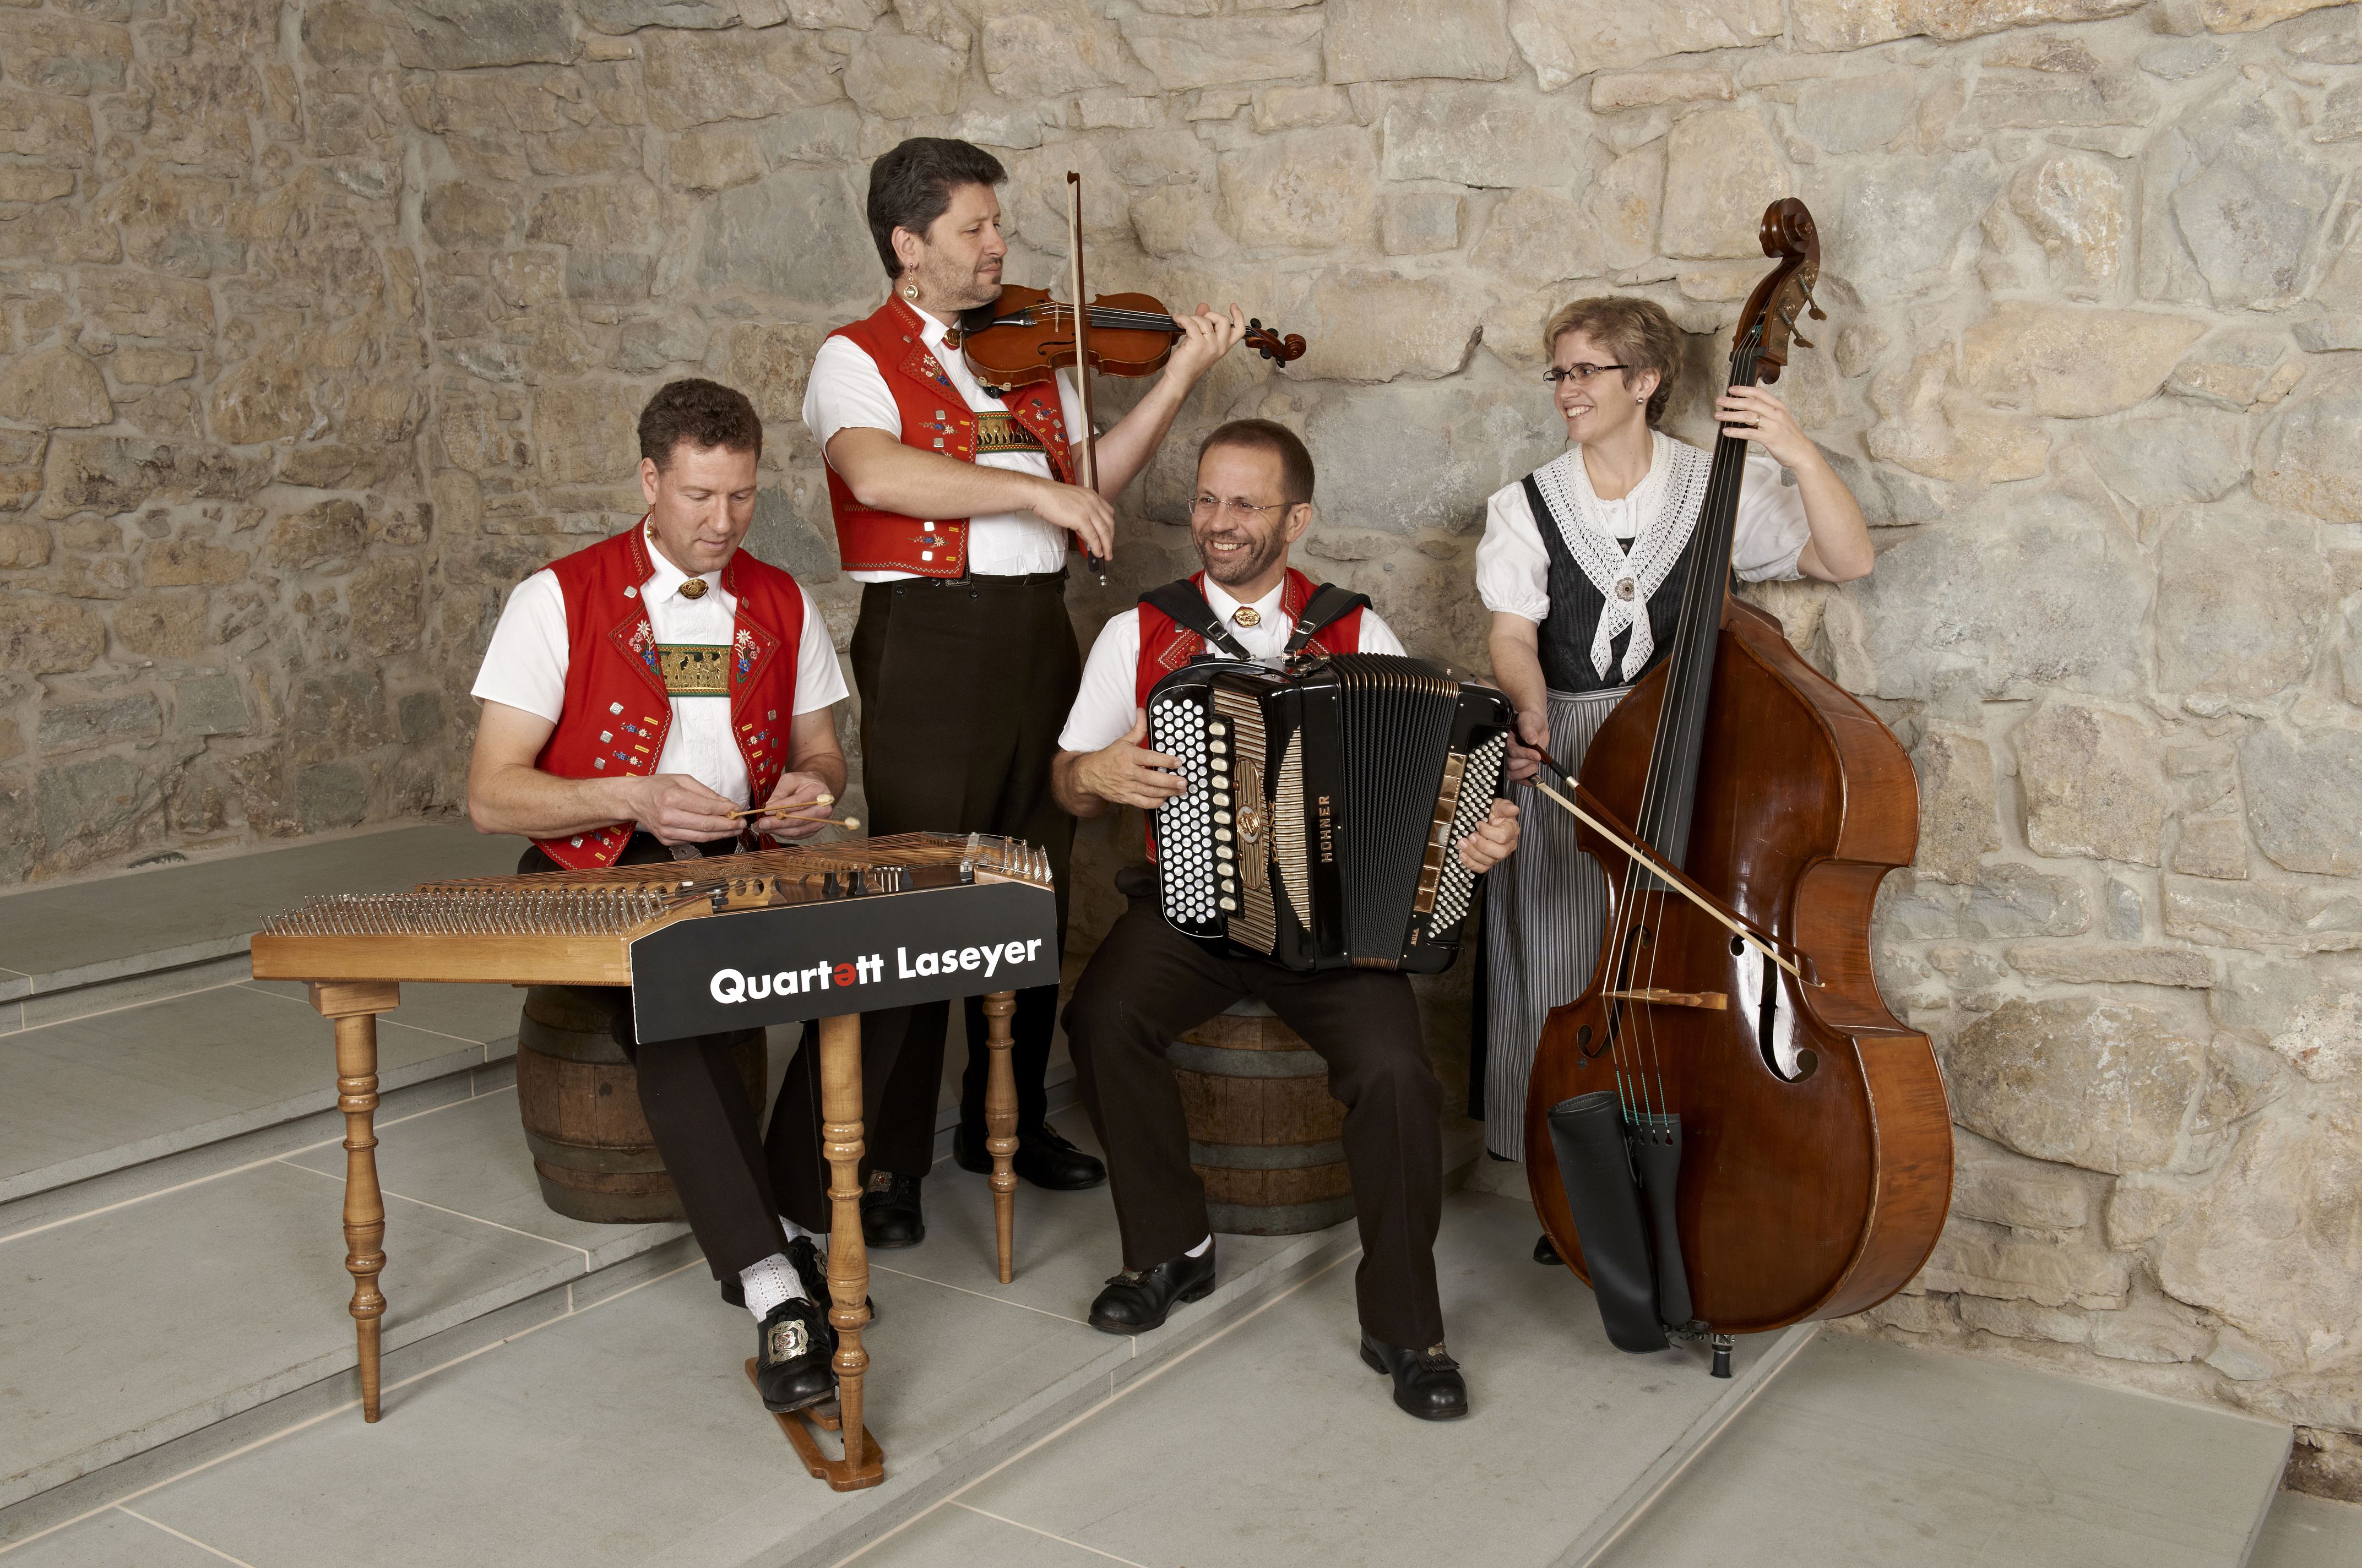 Quartett Laseyer Tracht mit Instrumenten am Spielen